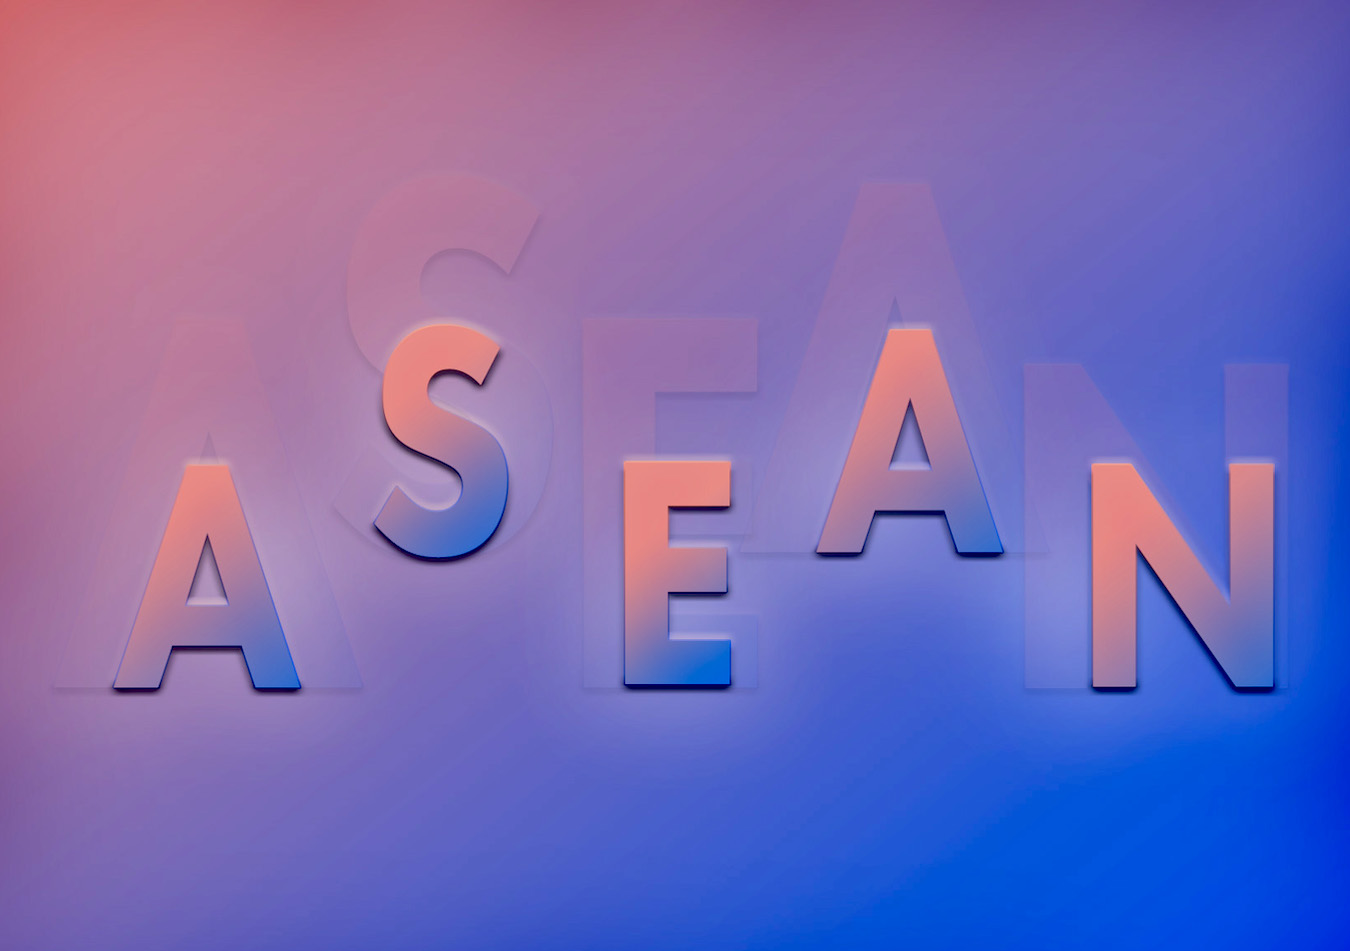 ASEAN © Vo Viet Anh